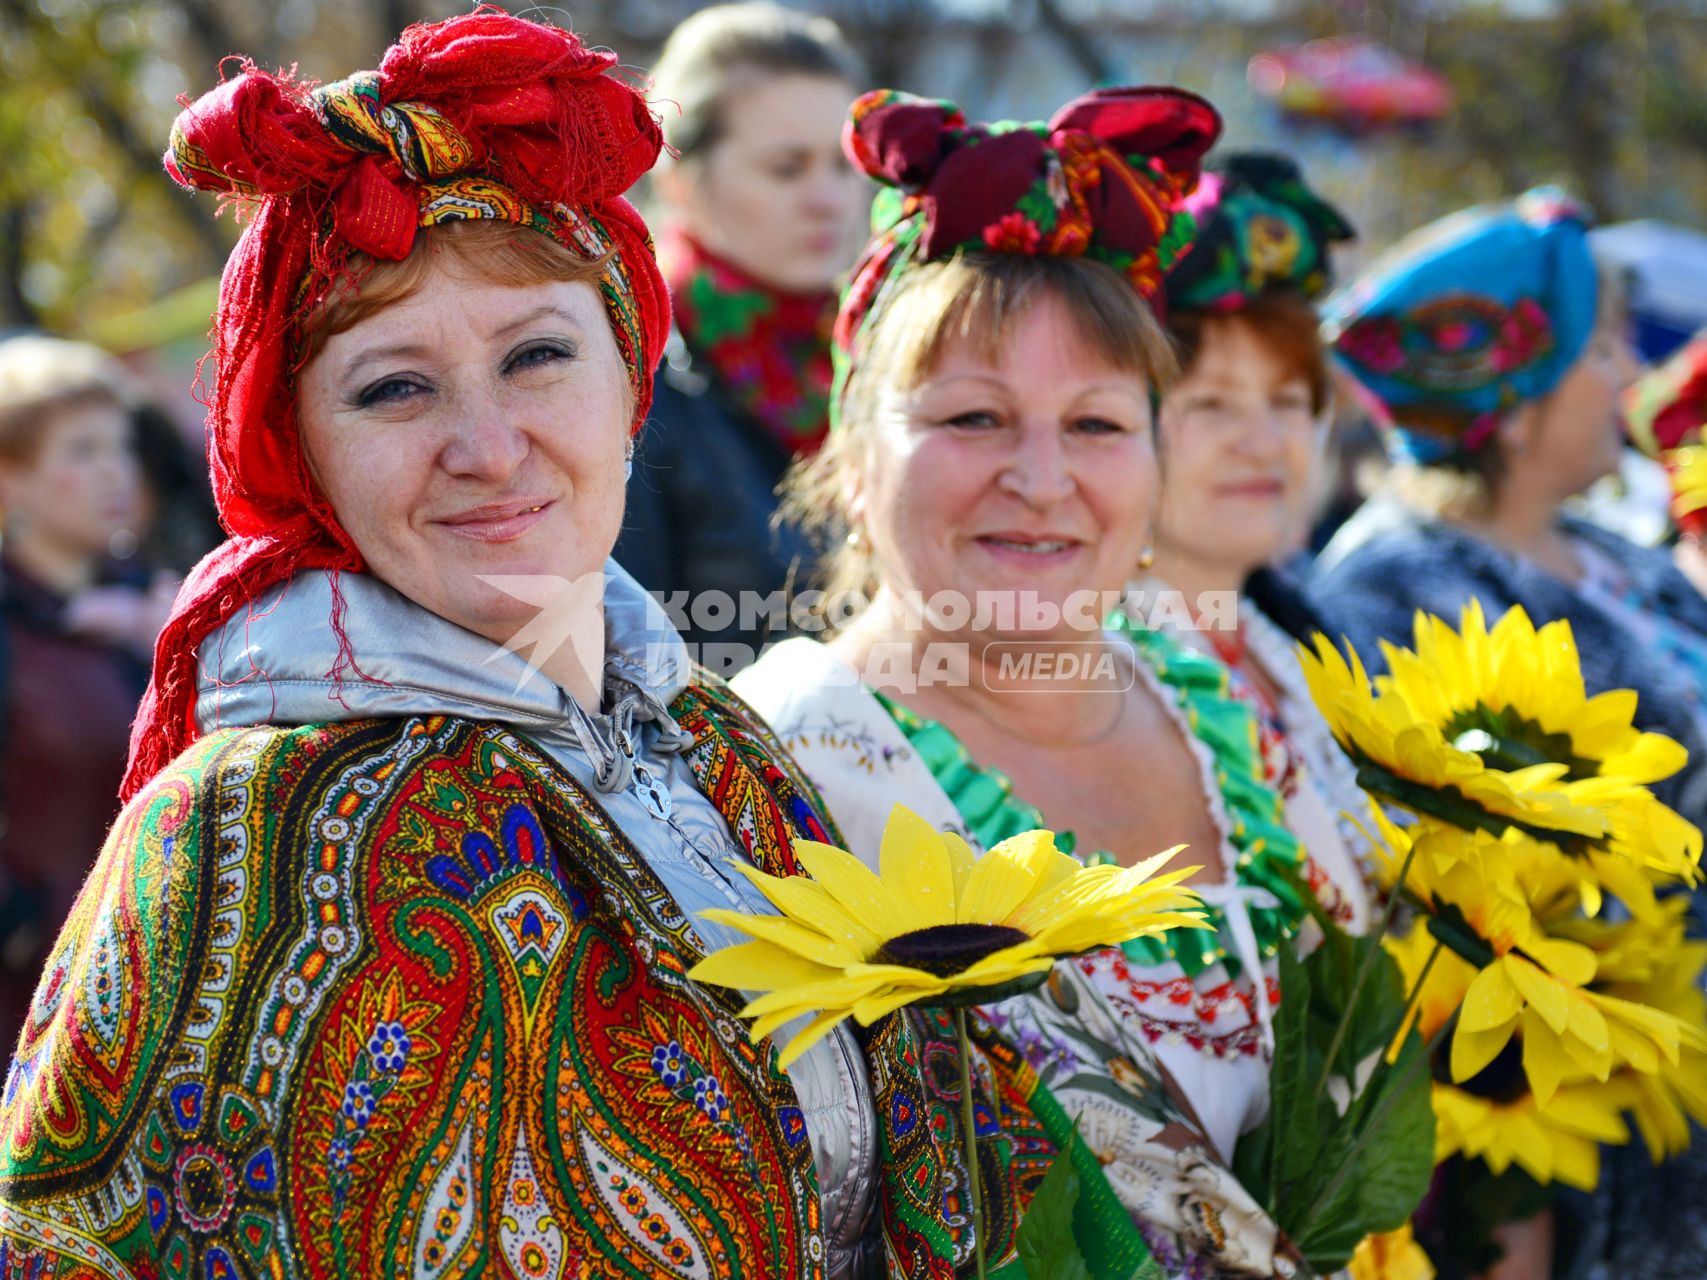 Праздник сала в Новосибирске. На снимке: женщины в национальных украинских нарядах.